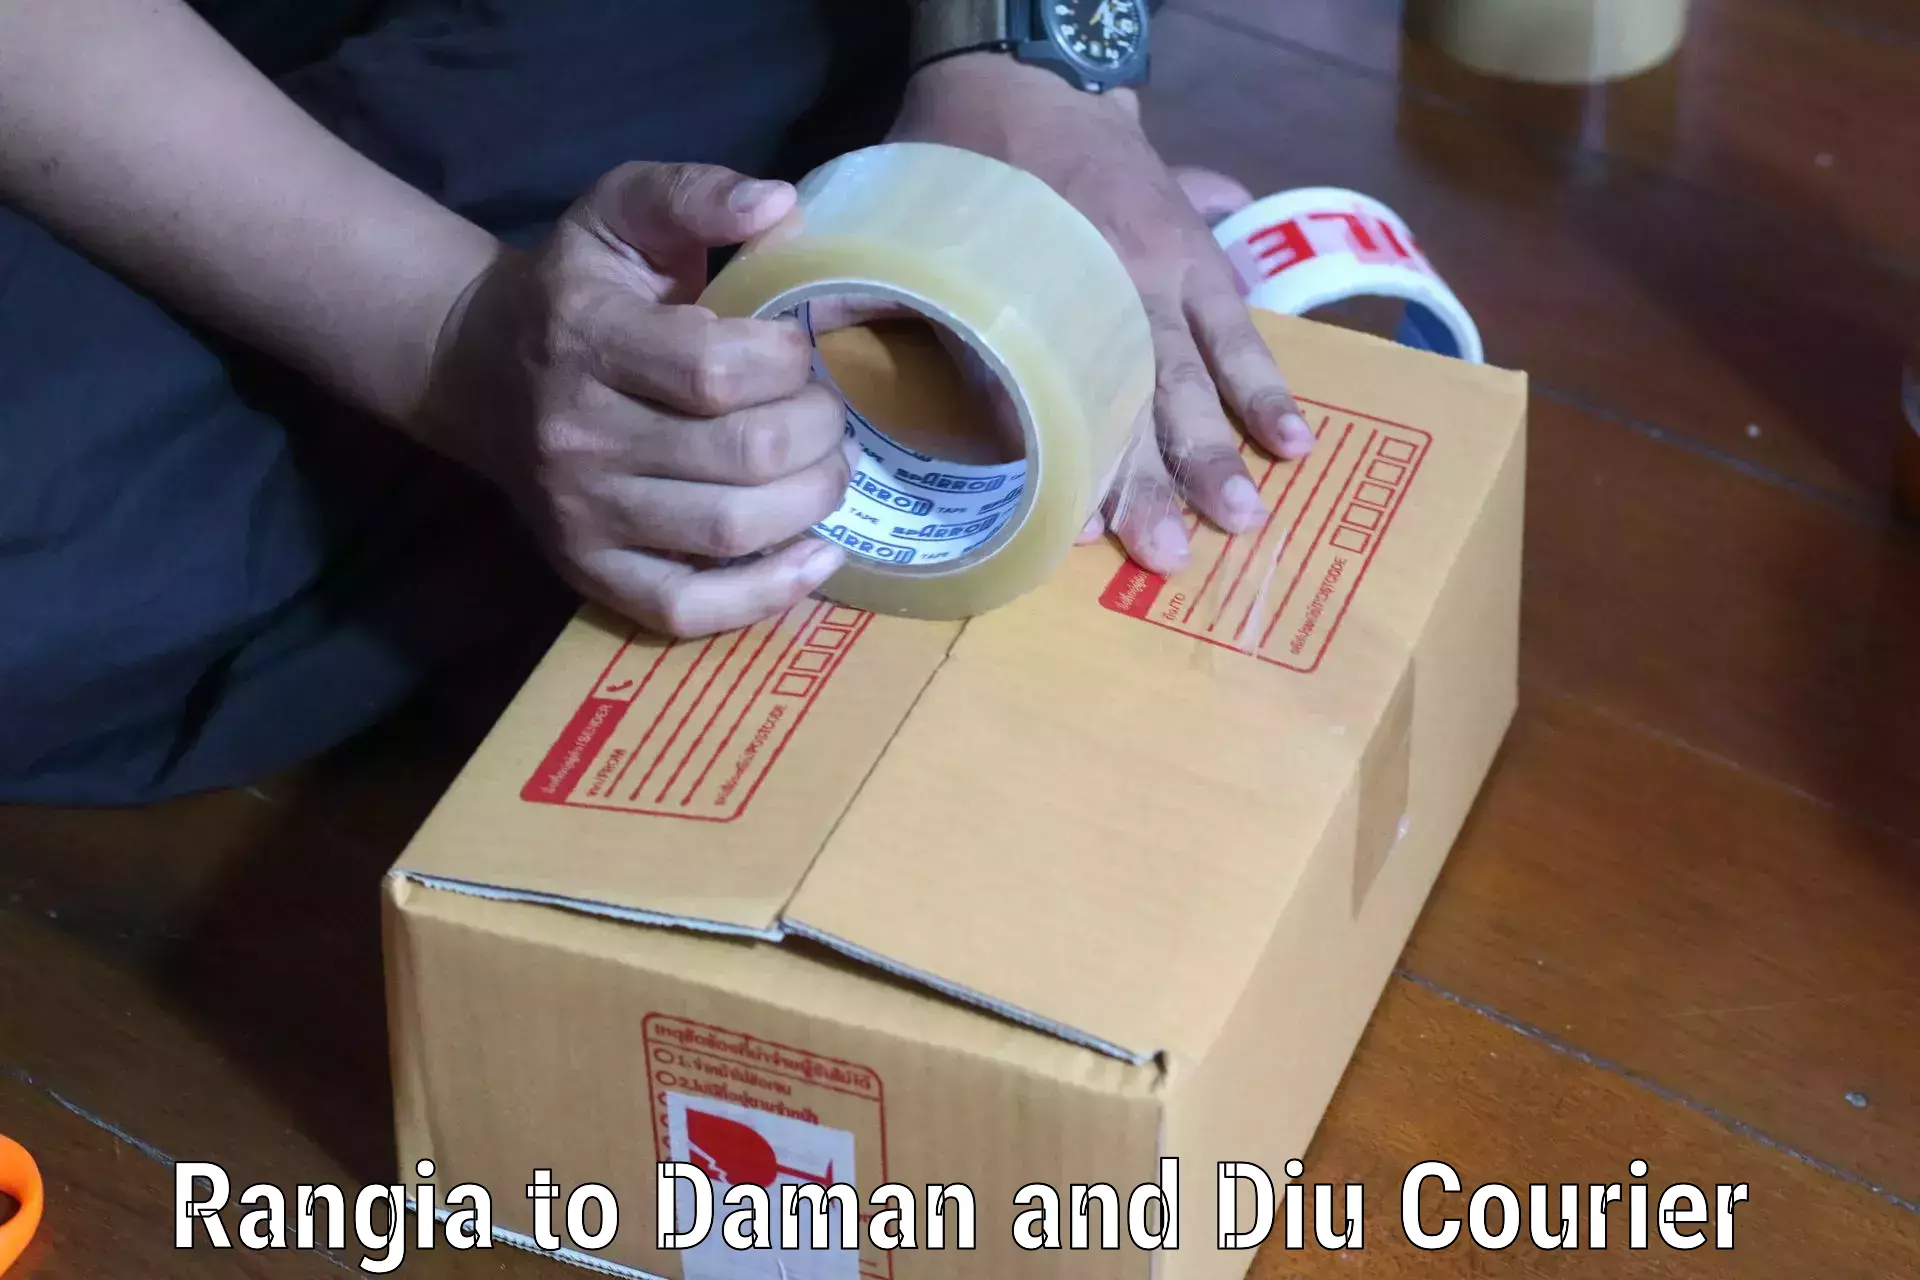 Efficient freight service Rangia to Daman and Diu